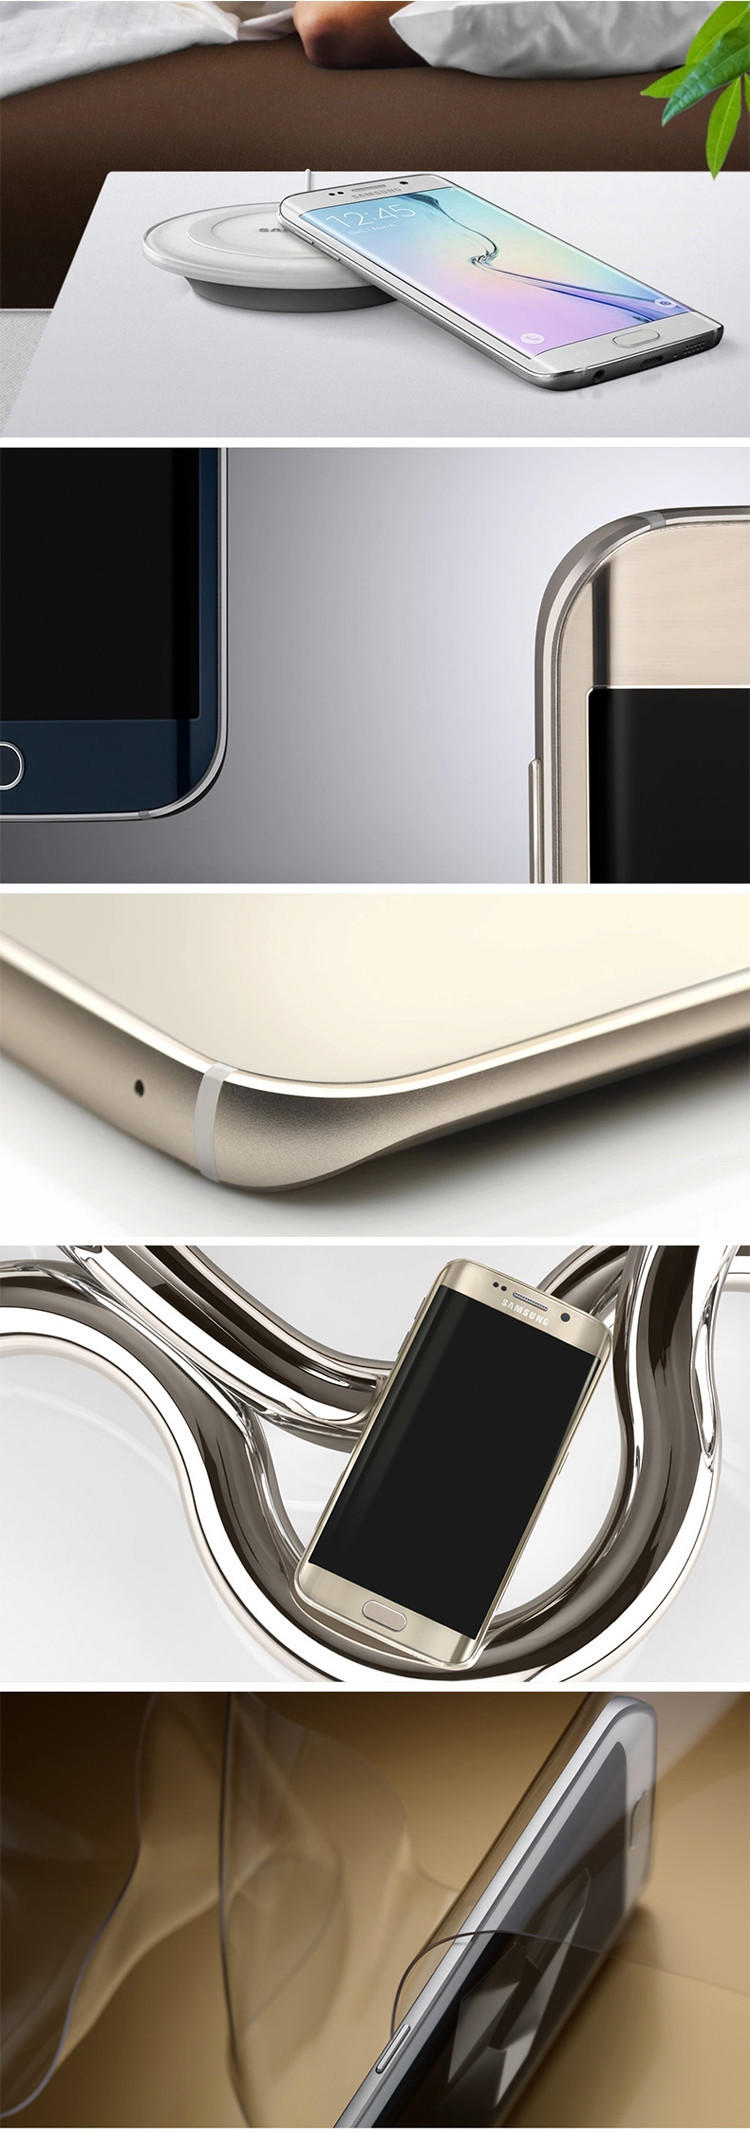  三星/SAMSUNG Galaxy S6 edge（G9250）白、黑32G版 全网通4G手机